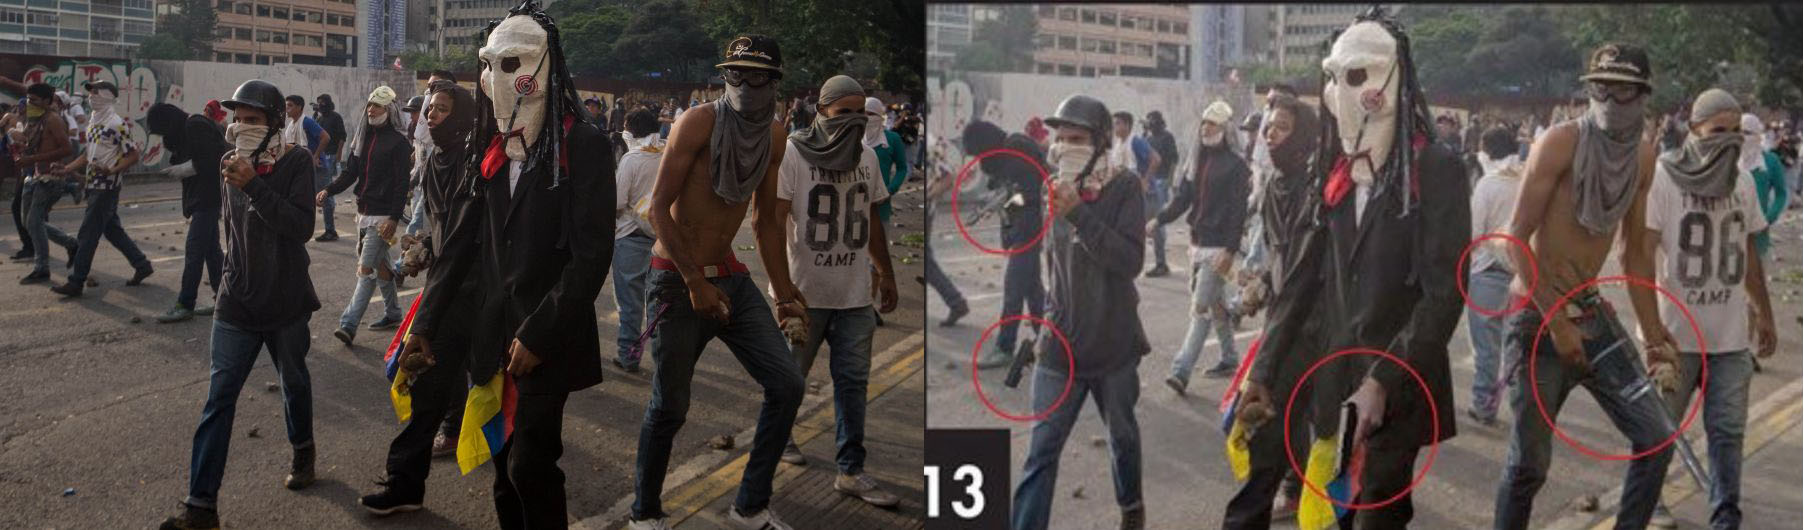 À esquerda, a imagem original (EFE/Miguel Gutiérrez); à direita, a foto manipulada, em que armas foram inseridas nas mãos dos manifestantes